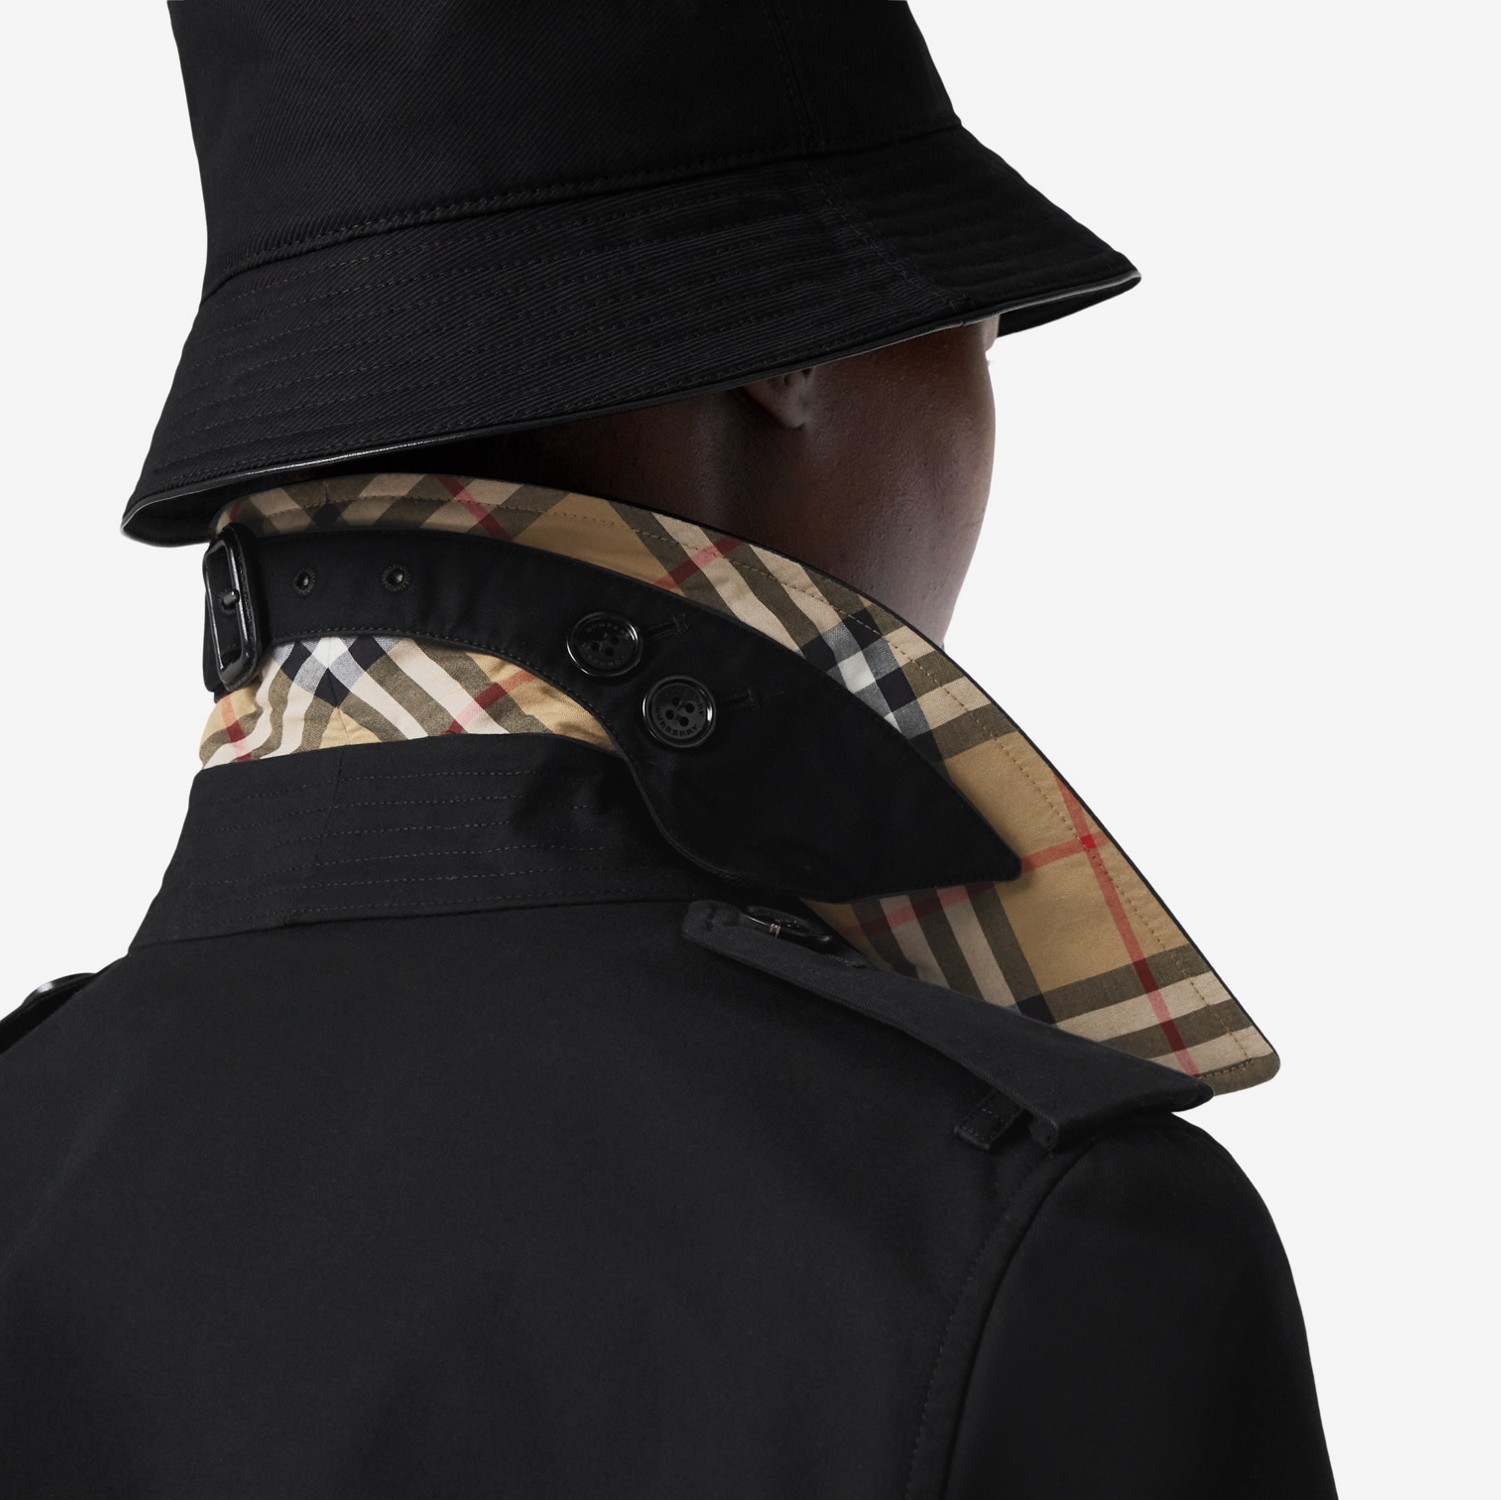 肯辛顿版型 – 中长款 Heritage Trench 风衣 (黑色) - 女士 | Burberry® 博柏利官网